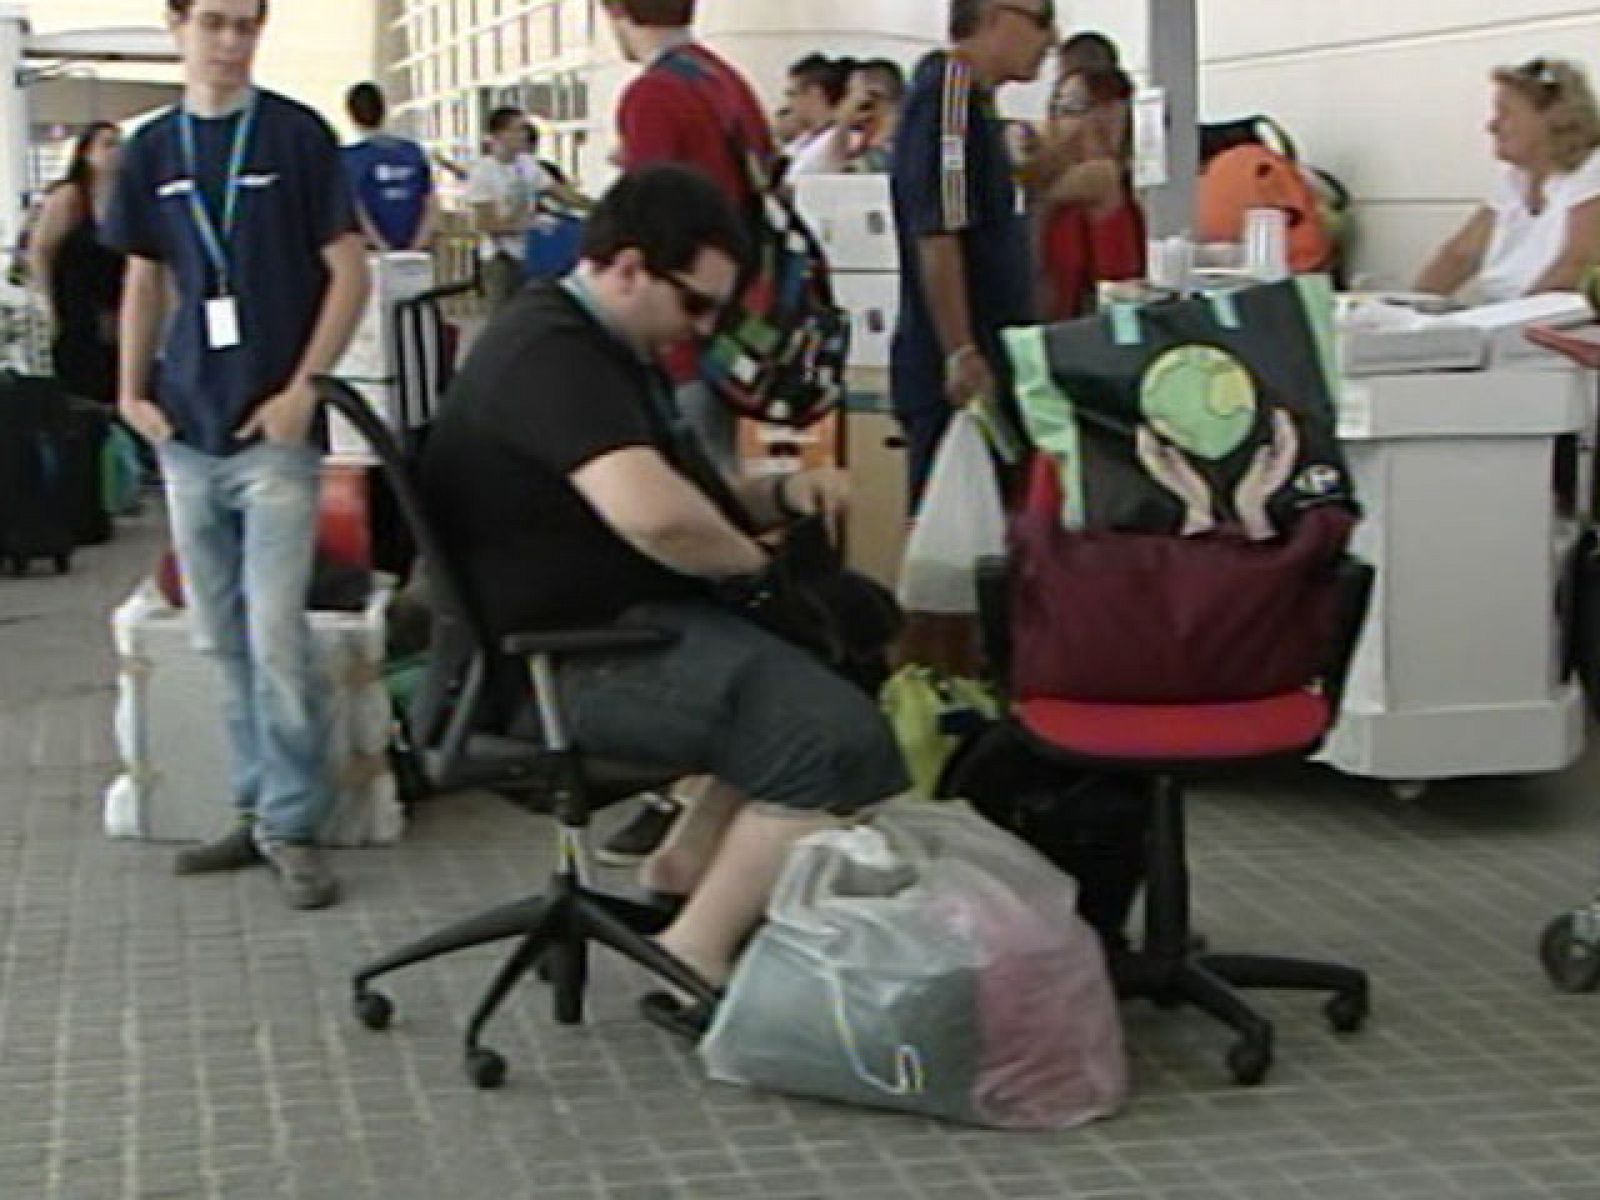 A las doce de la noche en Valencia 3.400 internautas arrancarán sus orderadores en Campus Party